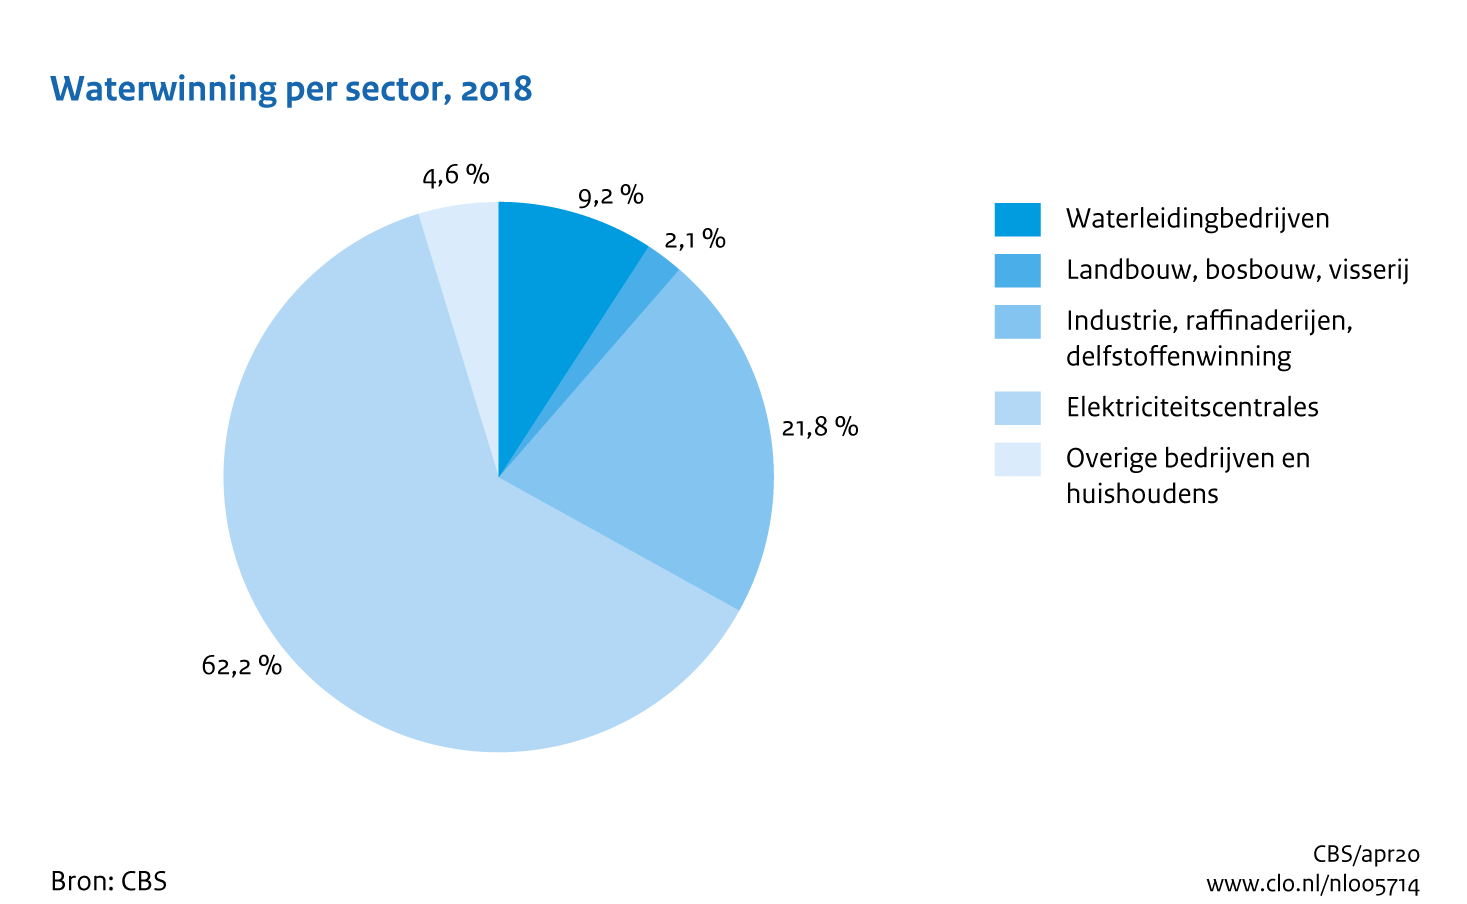 Figuur Waterwinning sectoren 2016. In de rest van de tekst wordt deze figuur uitgebreider uitgelegd.